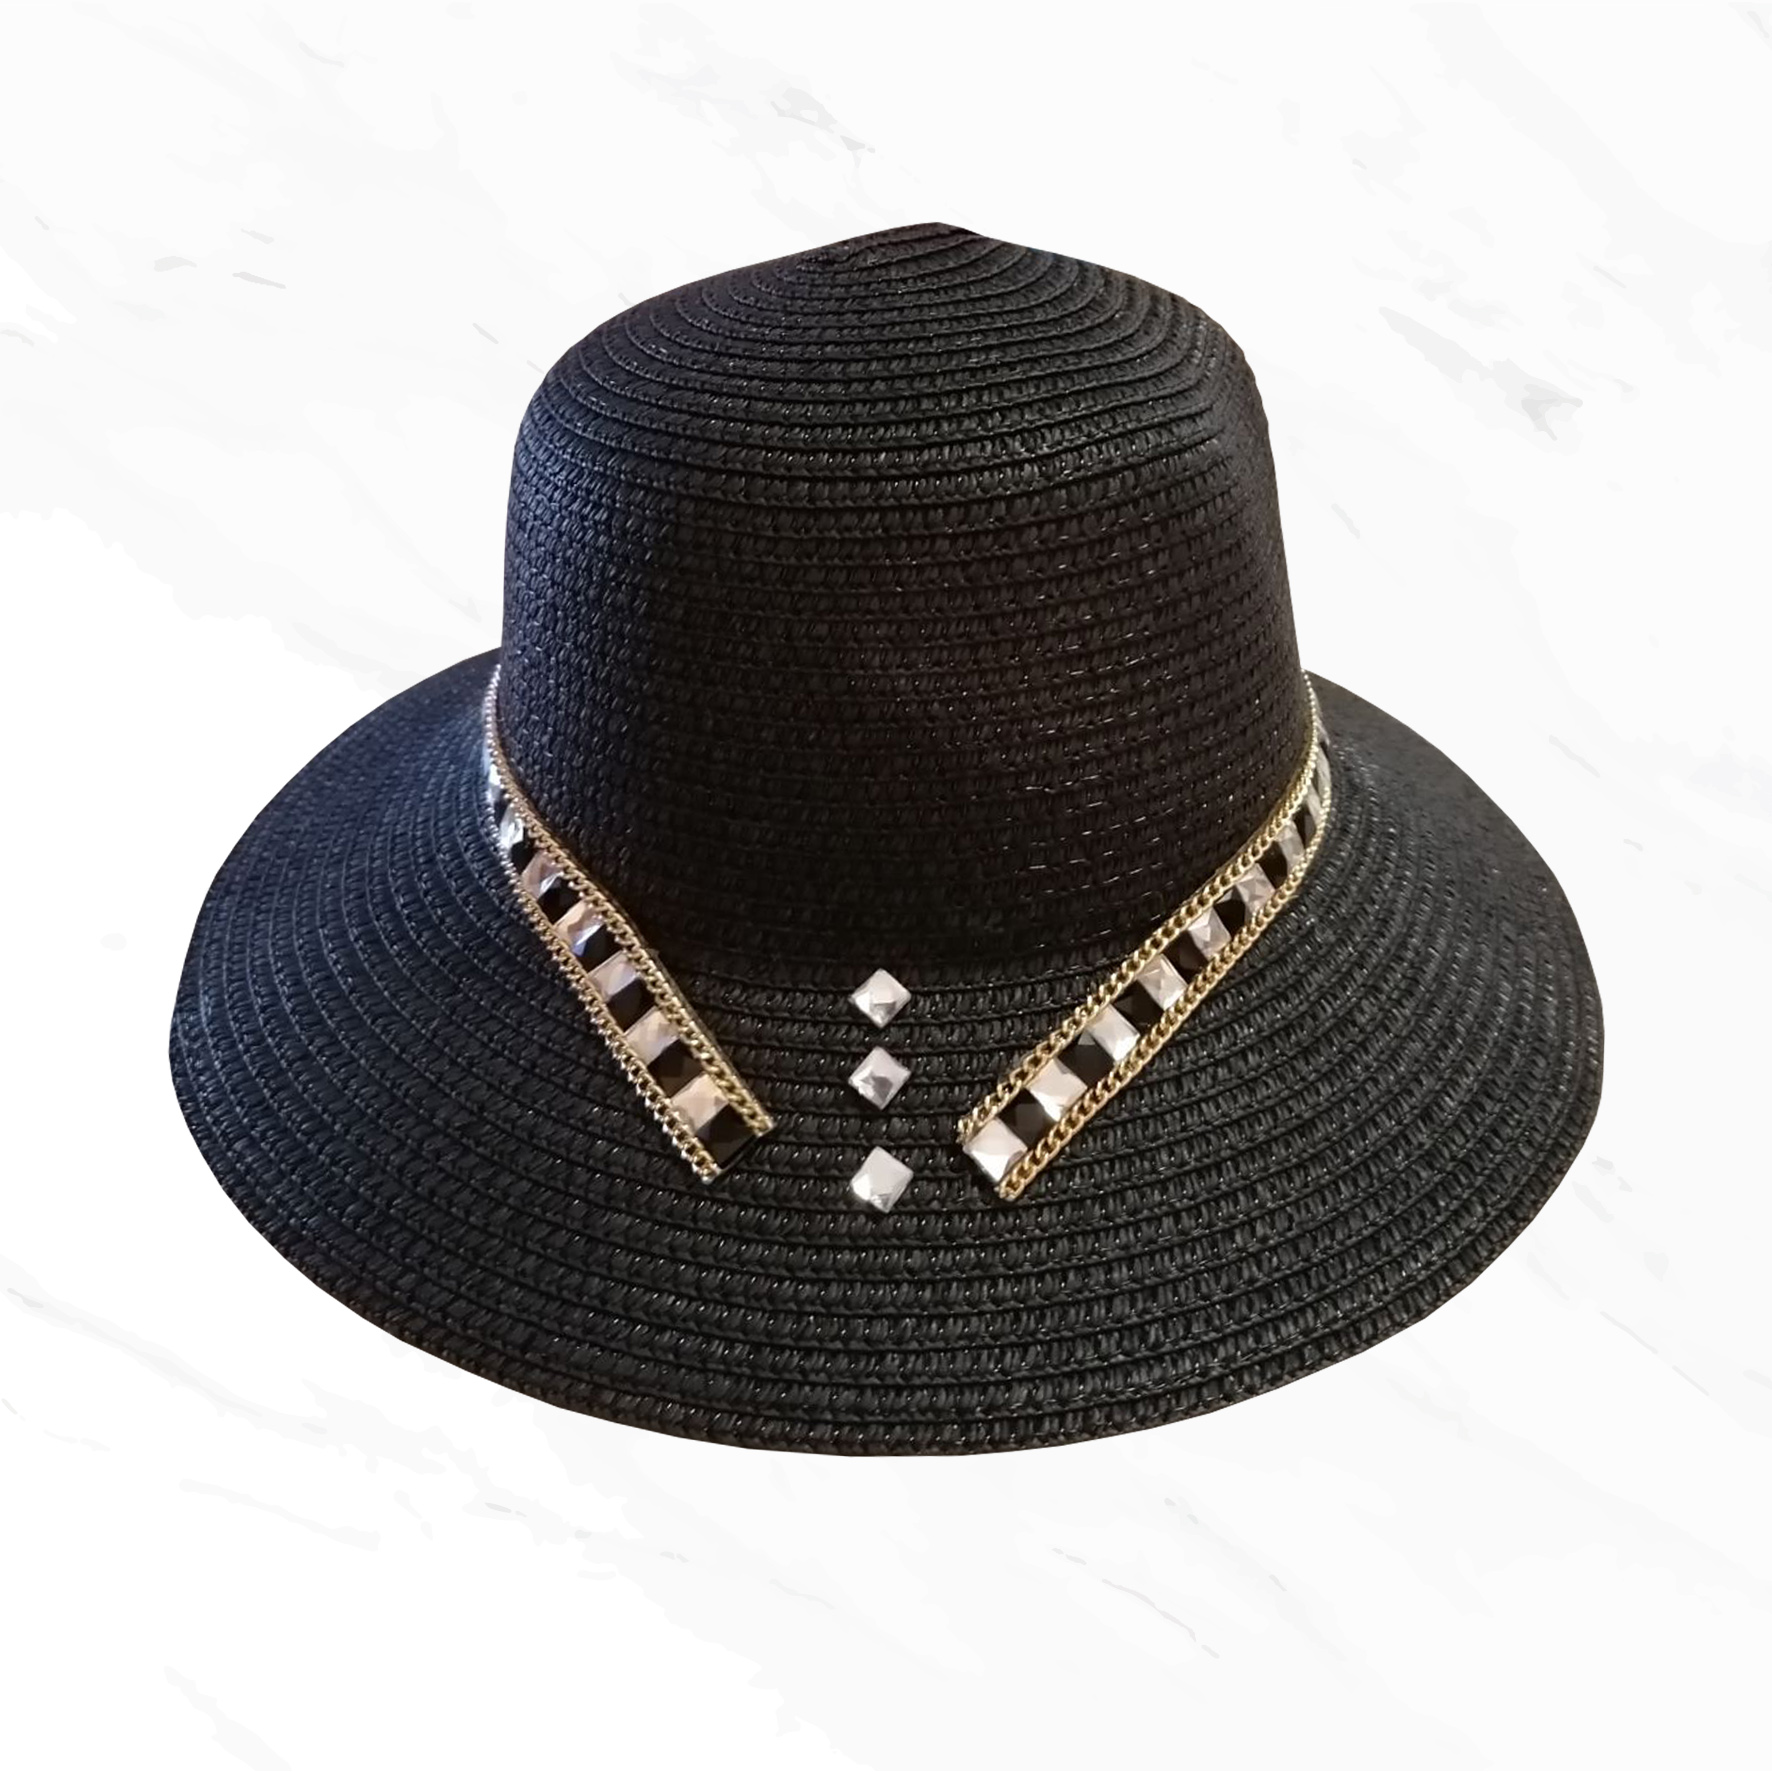 χειροποίητο ψάθινο καπέλο Black and White